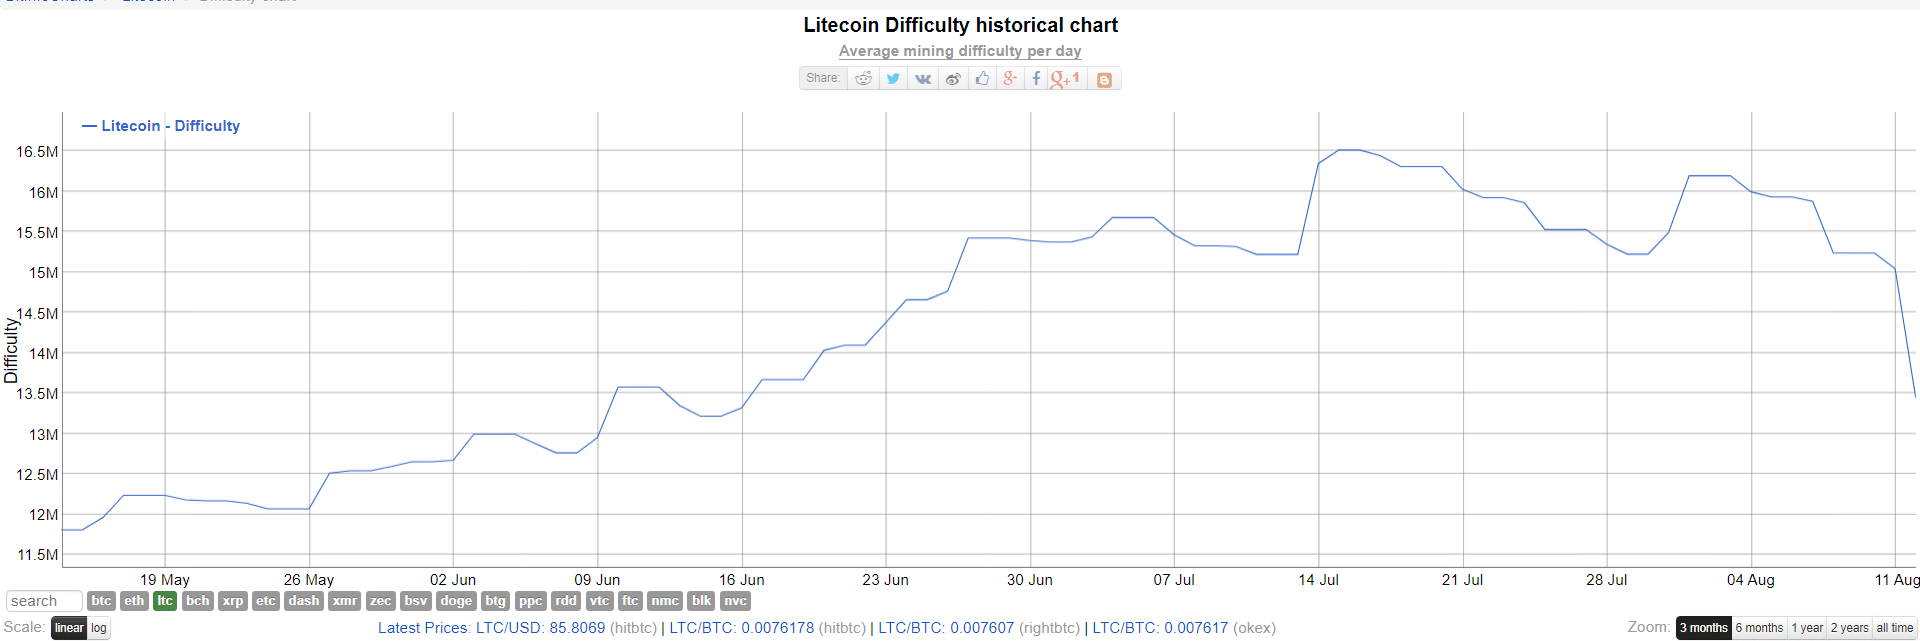 Dificultad minera de Litecoin